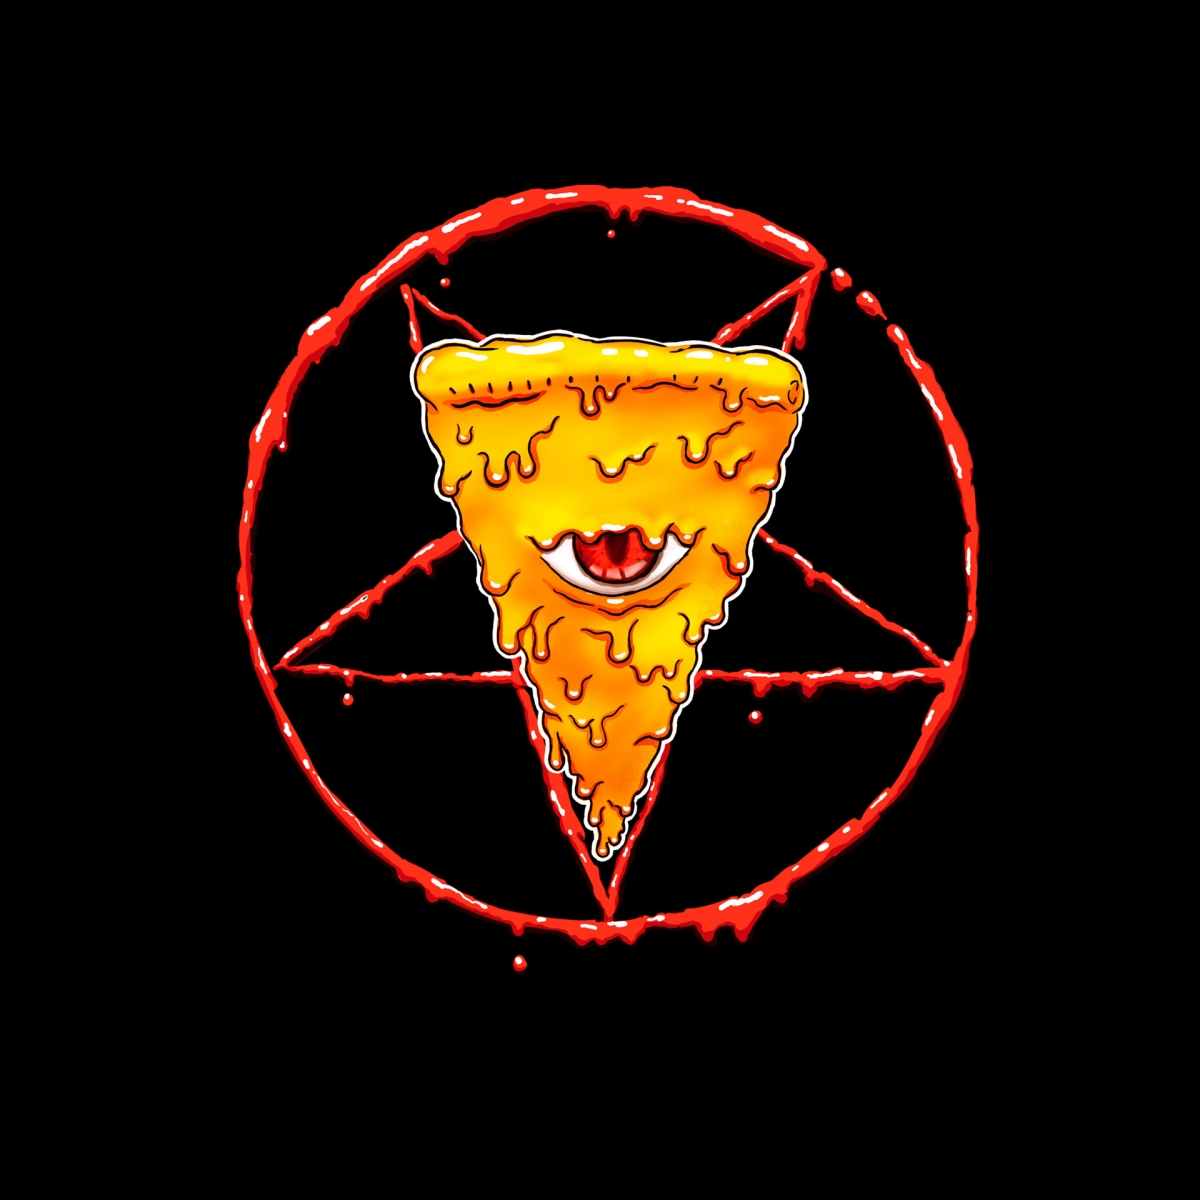 techo-souza-pizza-from-hell.jpg